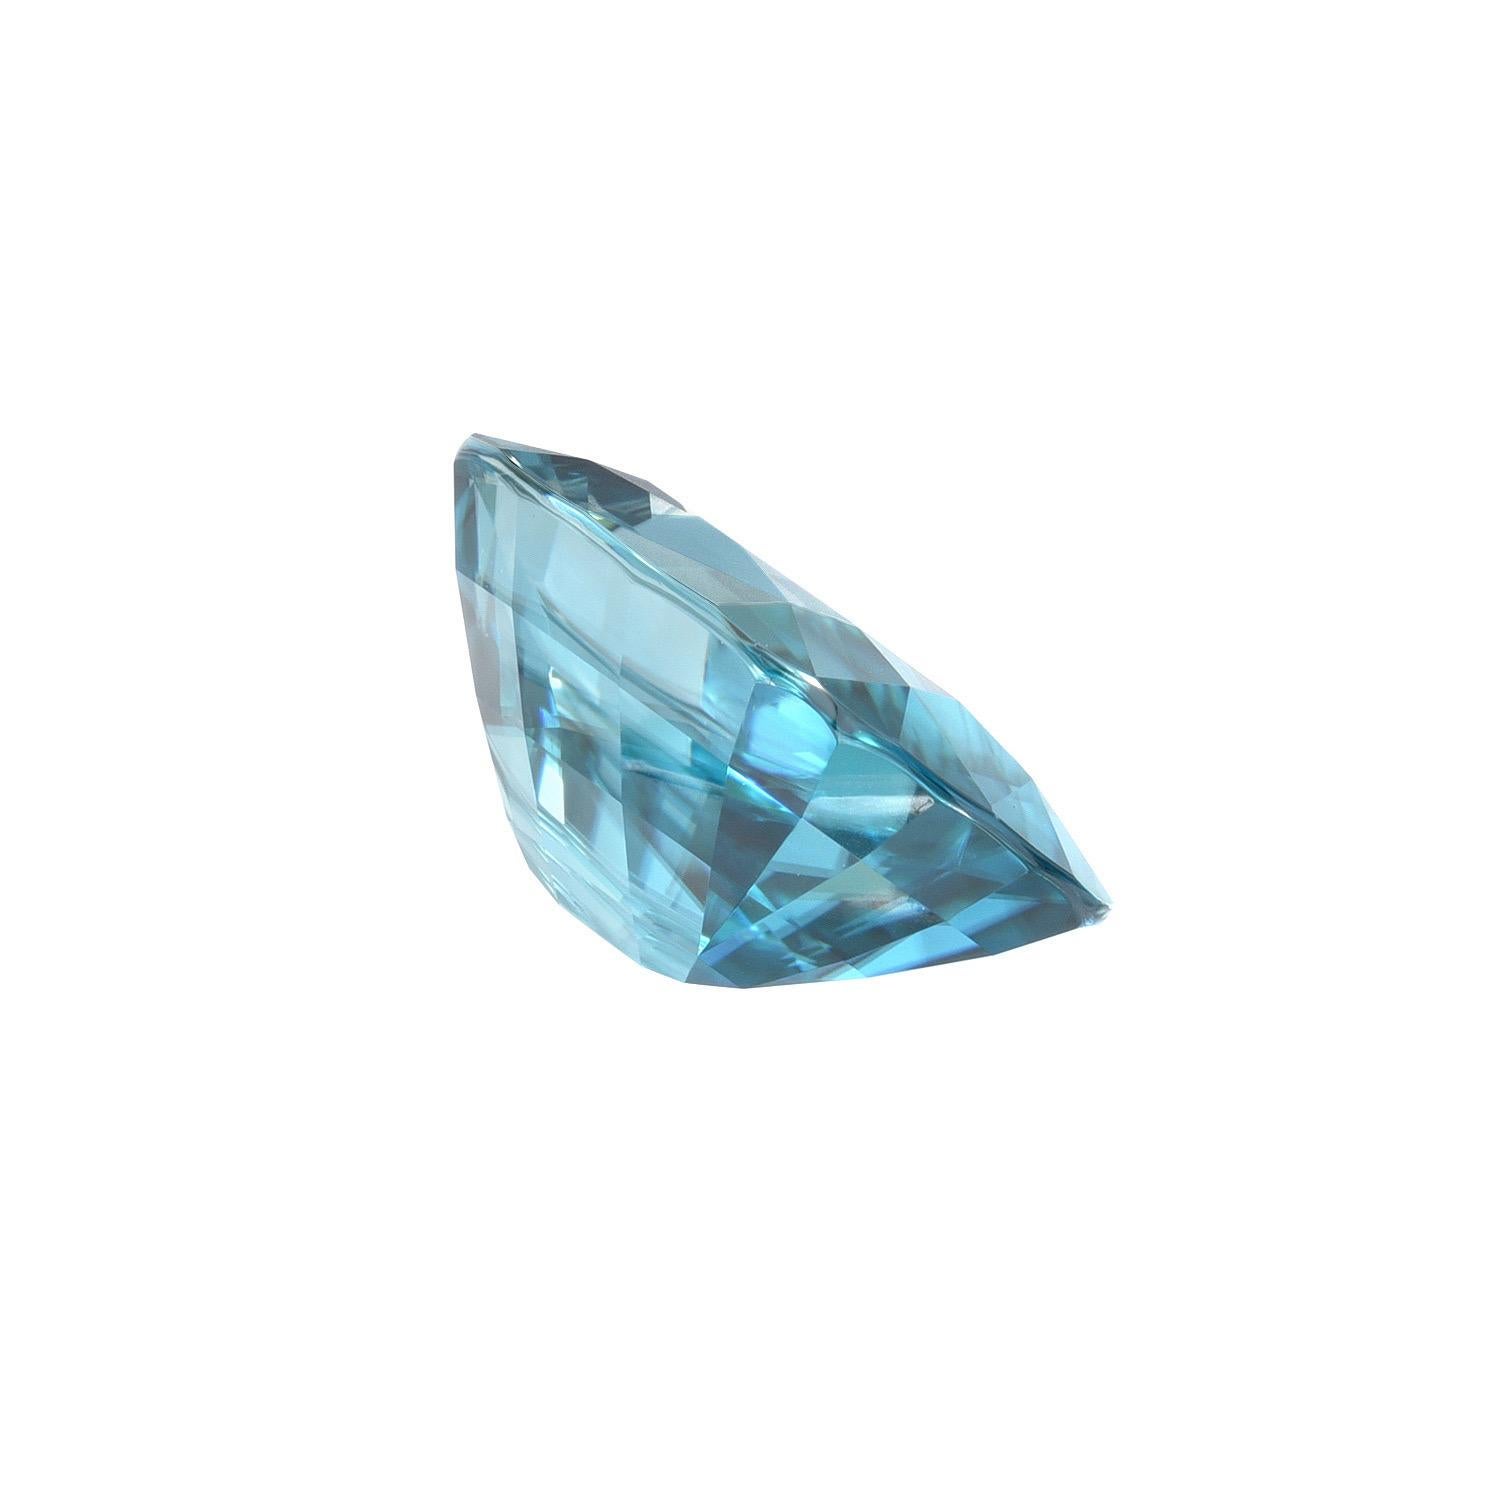 Un magnifique zircon bleu non monté de 8,00 carats est offert en vrac à un collectionneur de pierres précieuses sophistiqué. 
Les retours sont acceptés et pris en charge dans les sept jours suivant la livraison. 
Nous offrons d'excellents travaux de